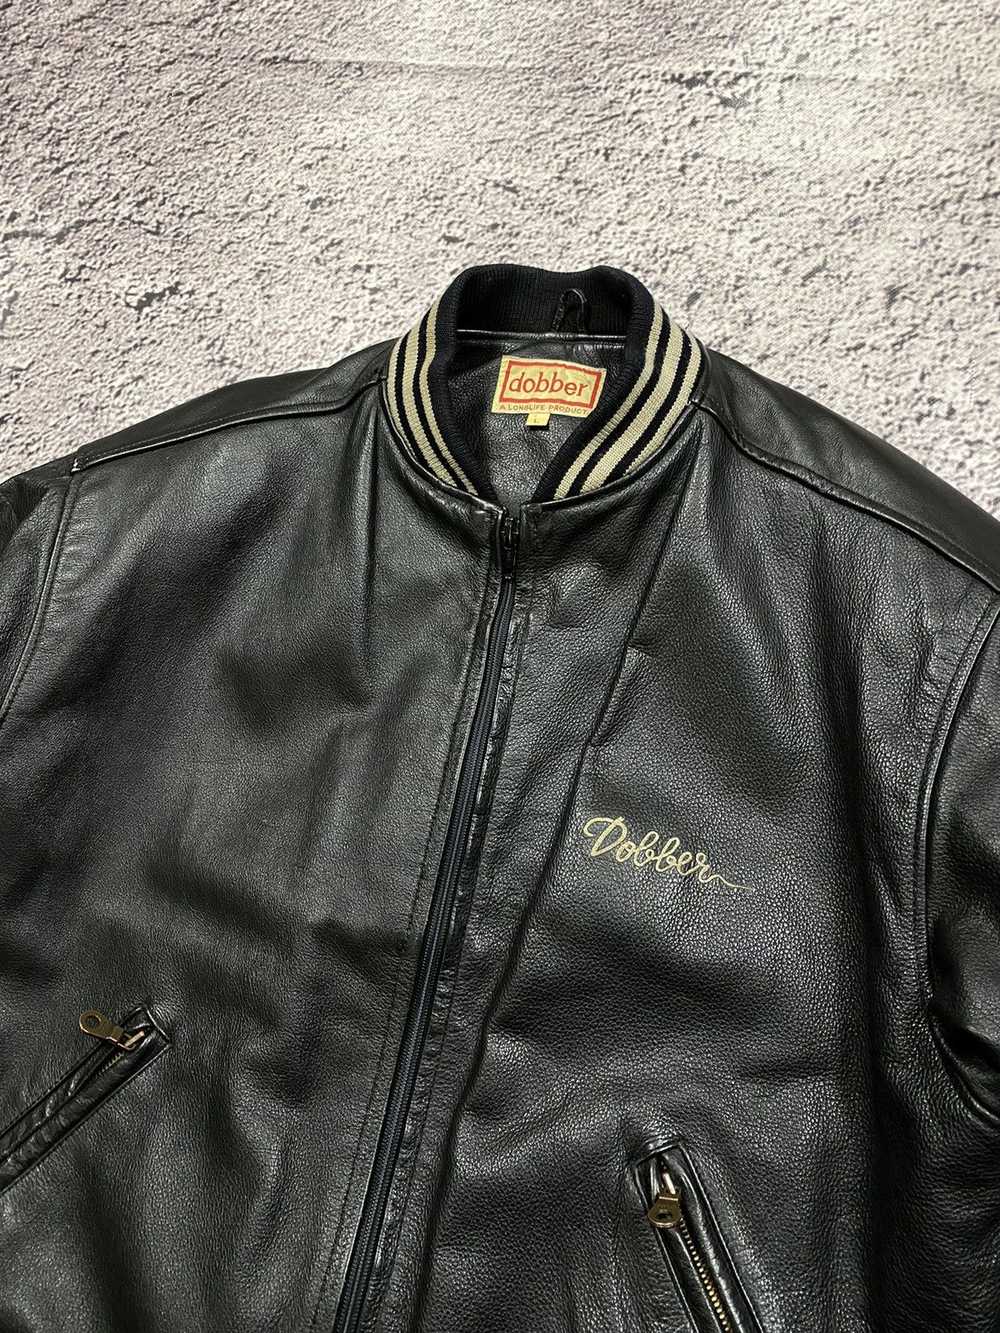 Japanese Brand × Leather Jacket × Vintage Vintage… - image 3